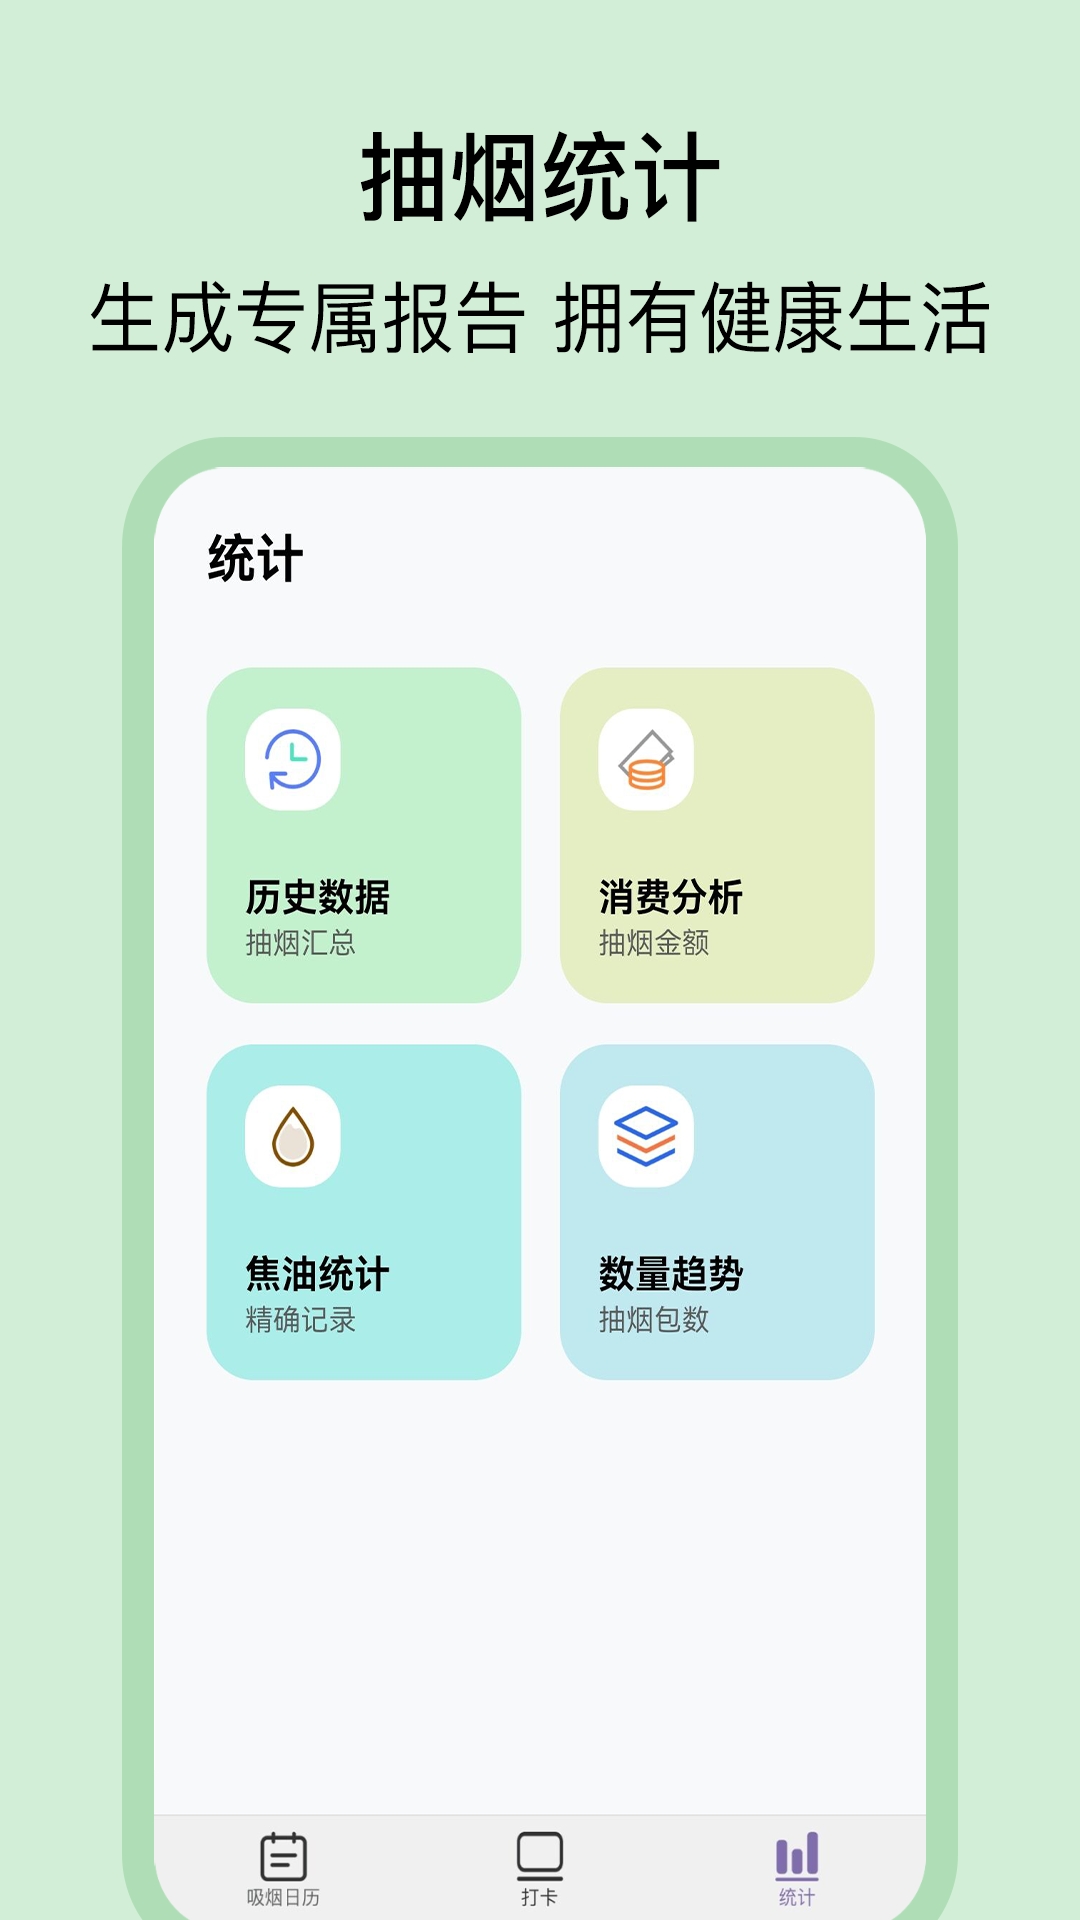 戒烟日记app安卓版下载